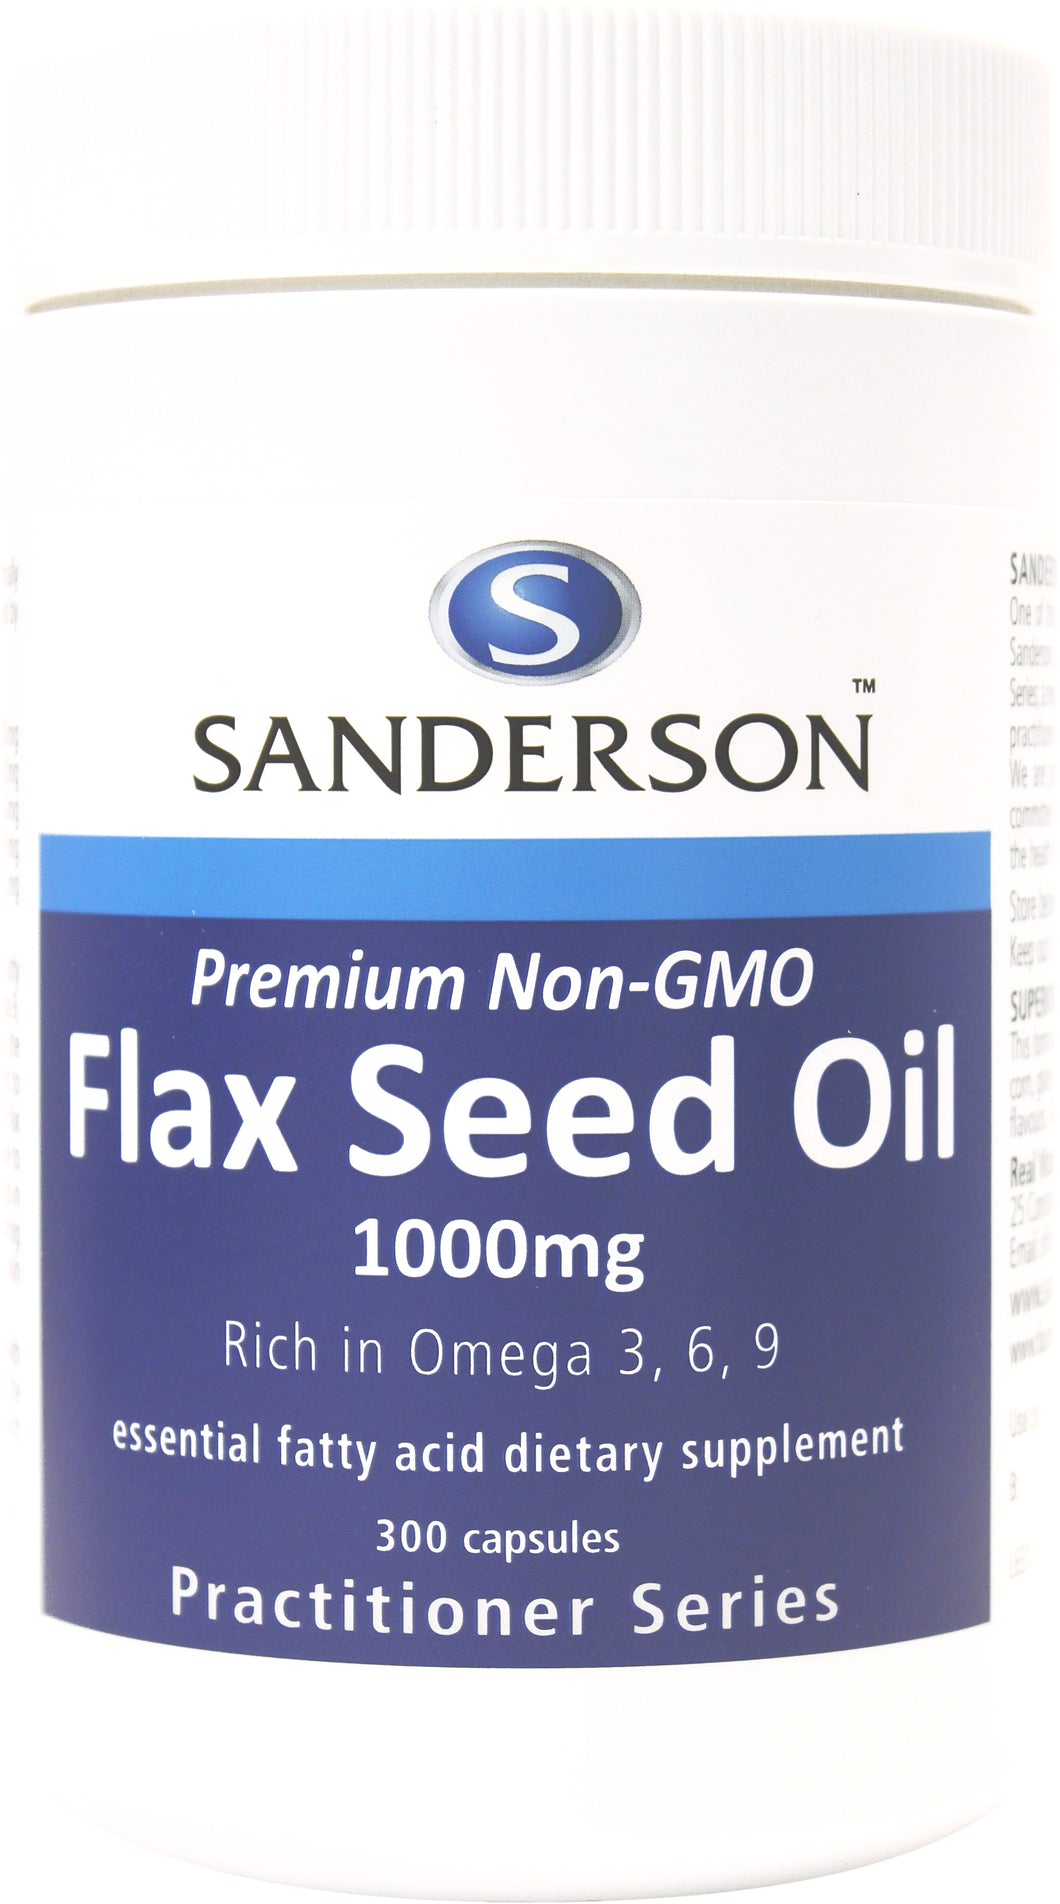 ပရီမီယမ် မ ဟုတ် သော GMO Flax မျိုးစေ့ ဆီ ၁၀၀၀ မီလီမီတာ ဆော့ဖ်ဂဲလ်